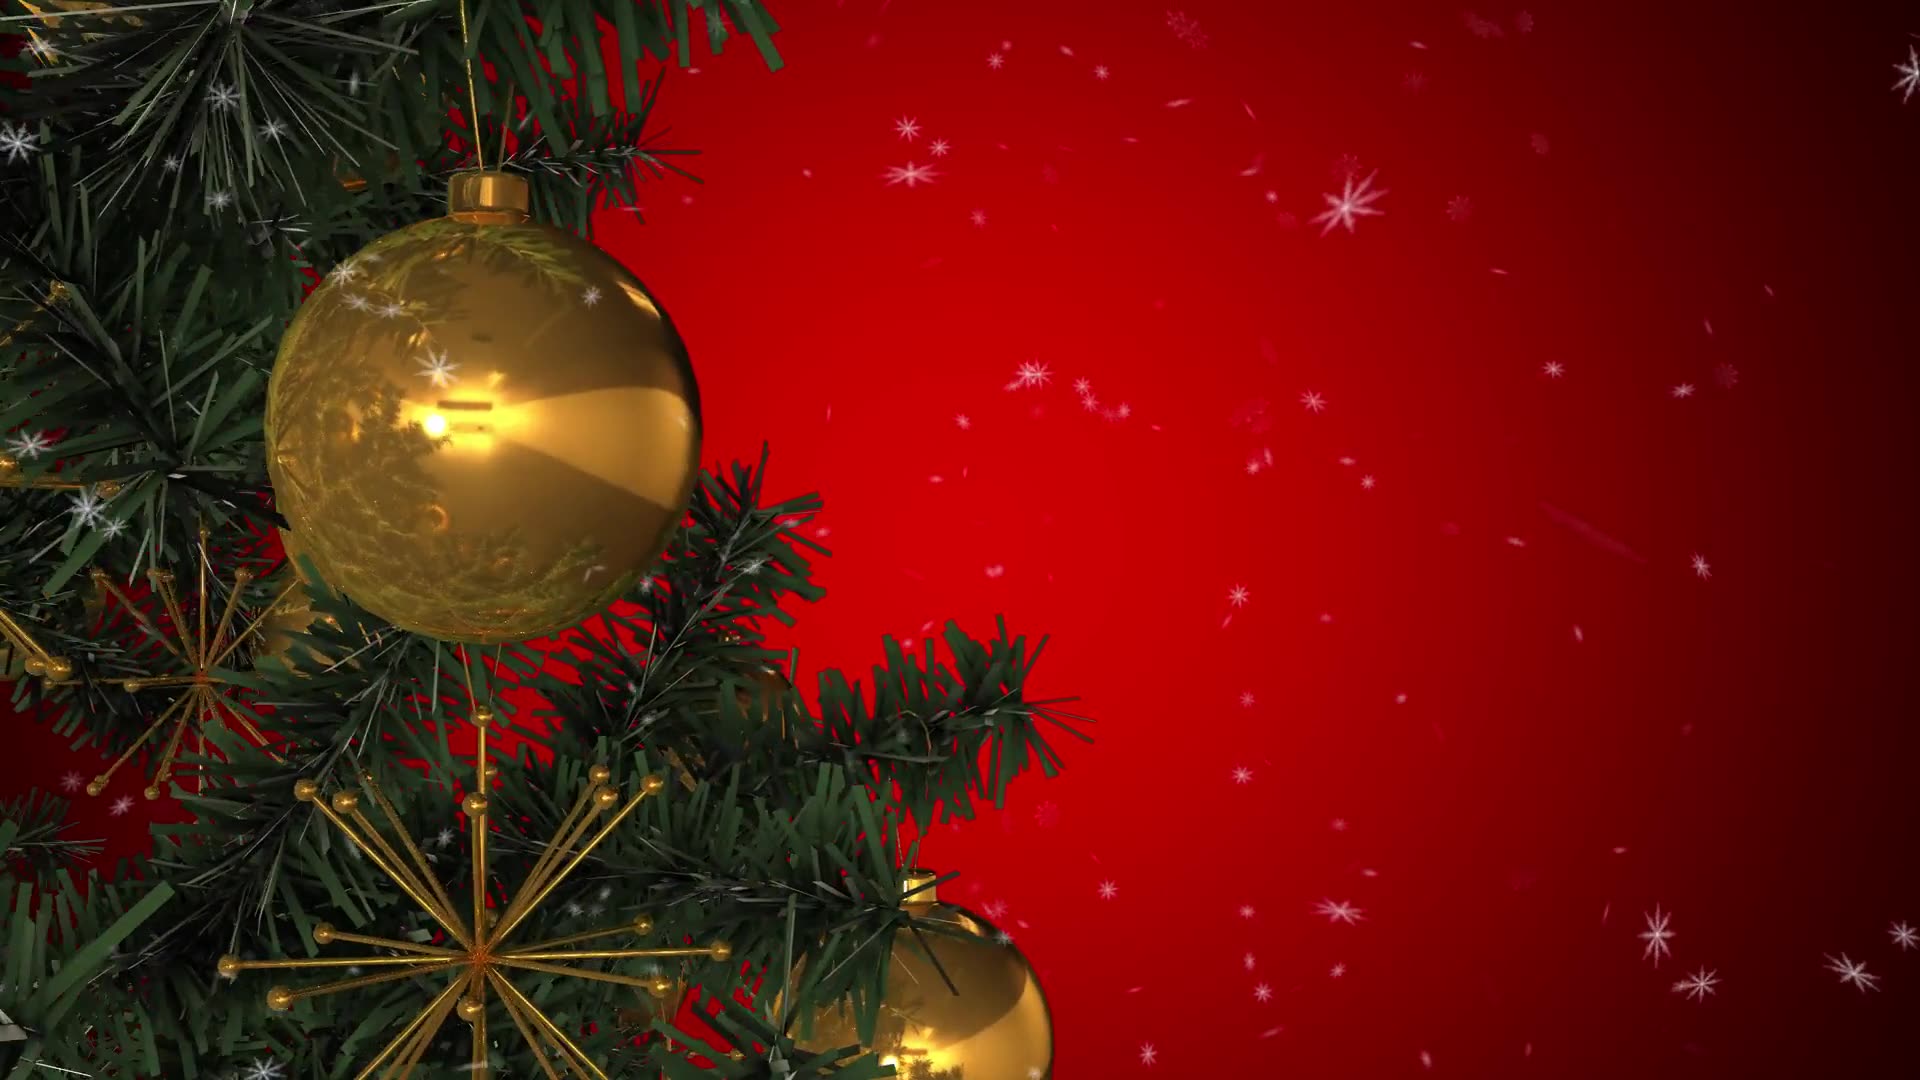 Rotating Christmas Tree Videohive 22935986 Motion Graphics Image 2